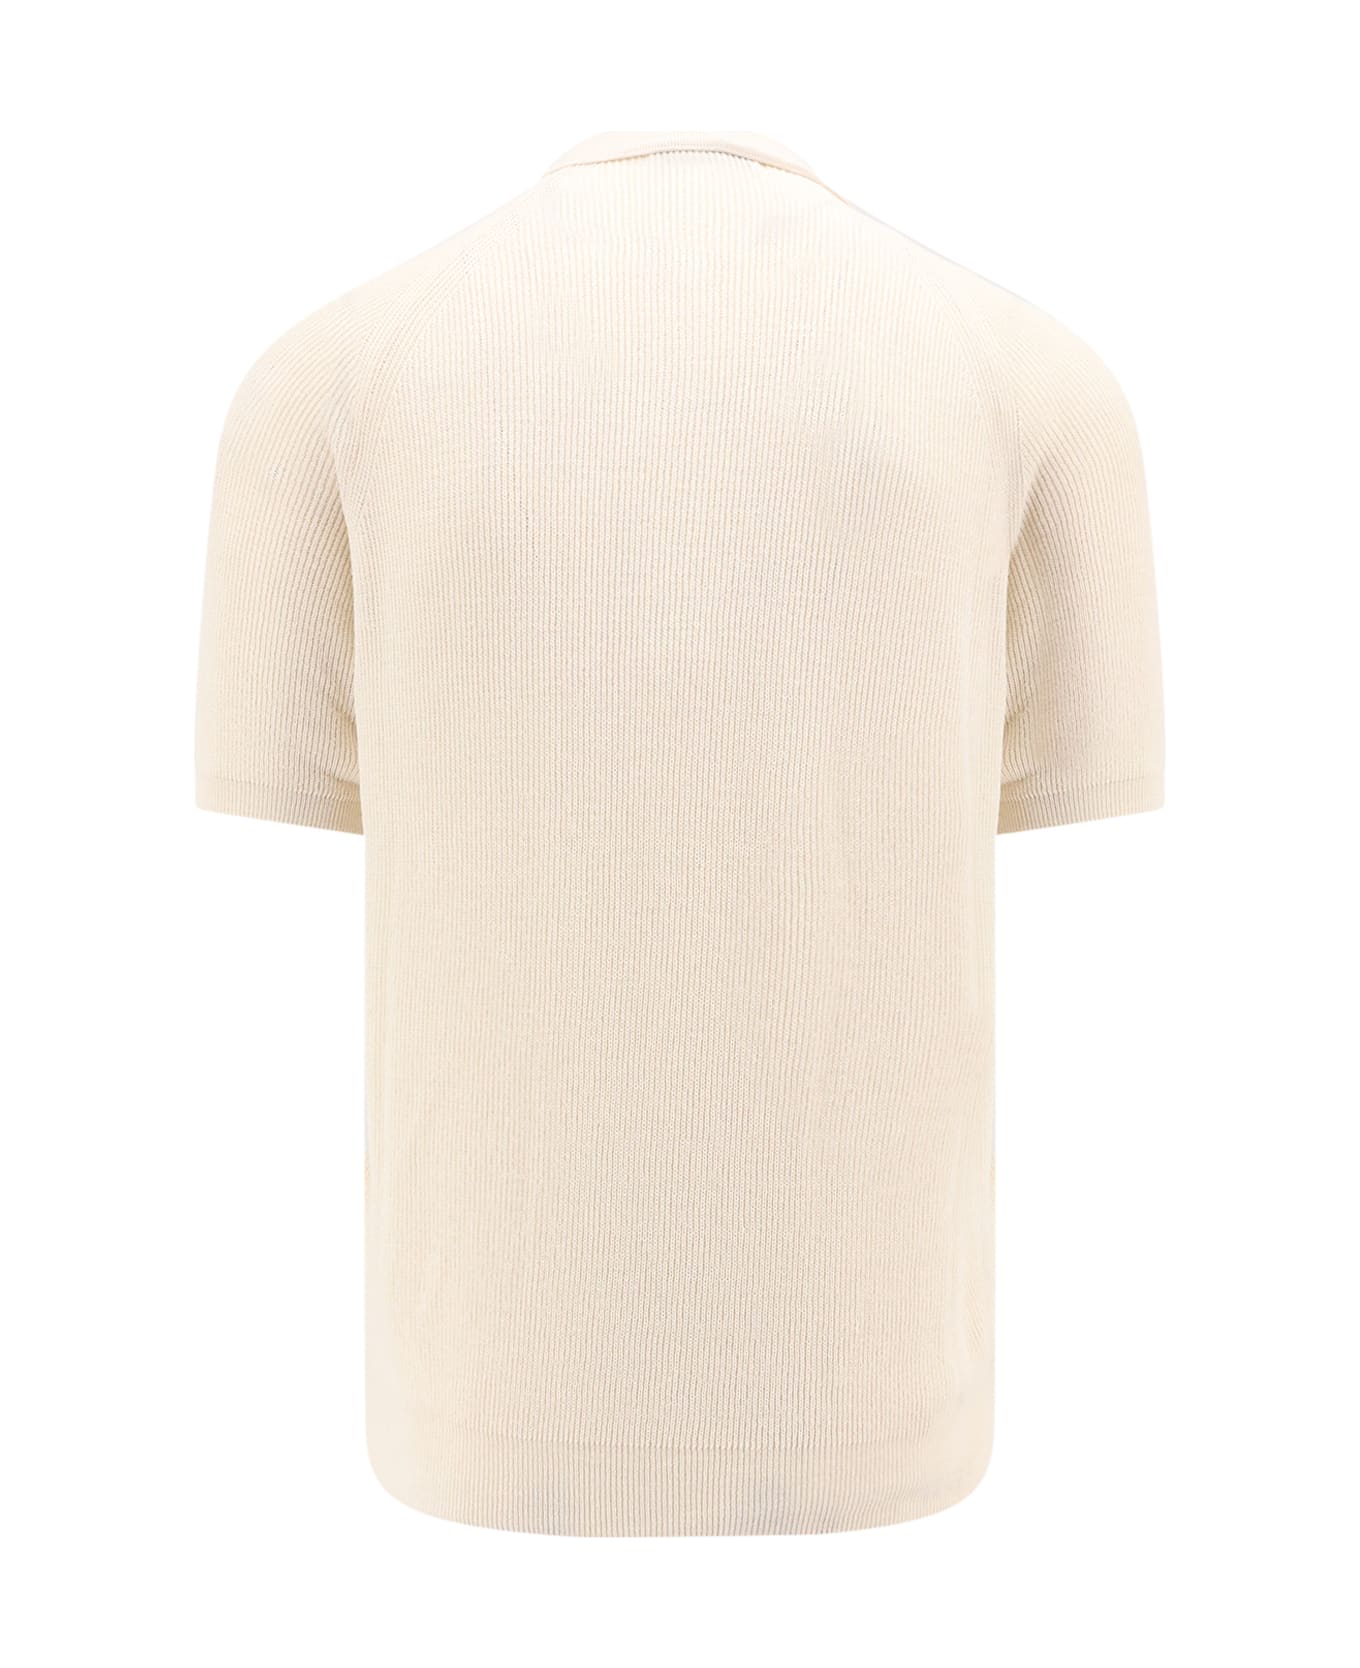 Laneus Polo Shirt - White